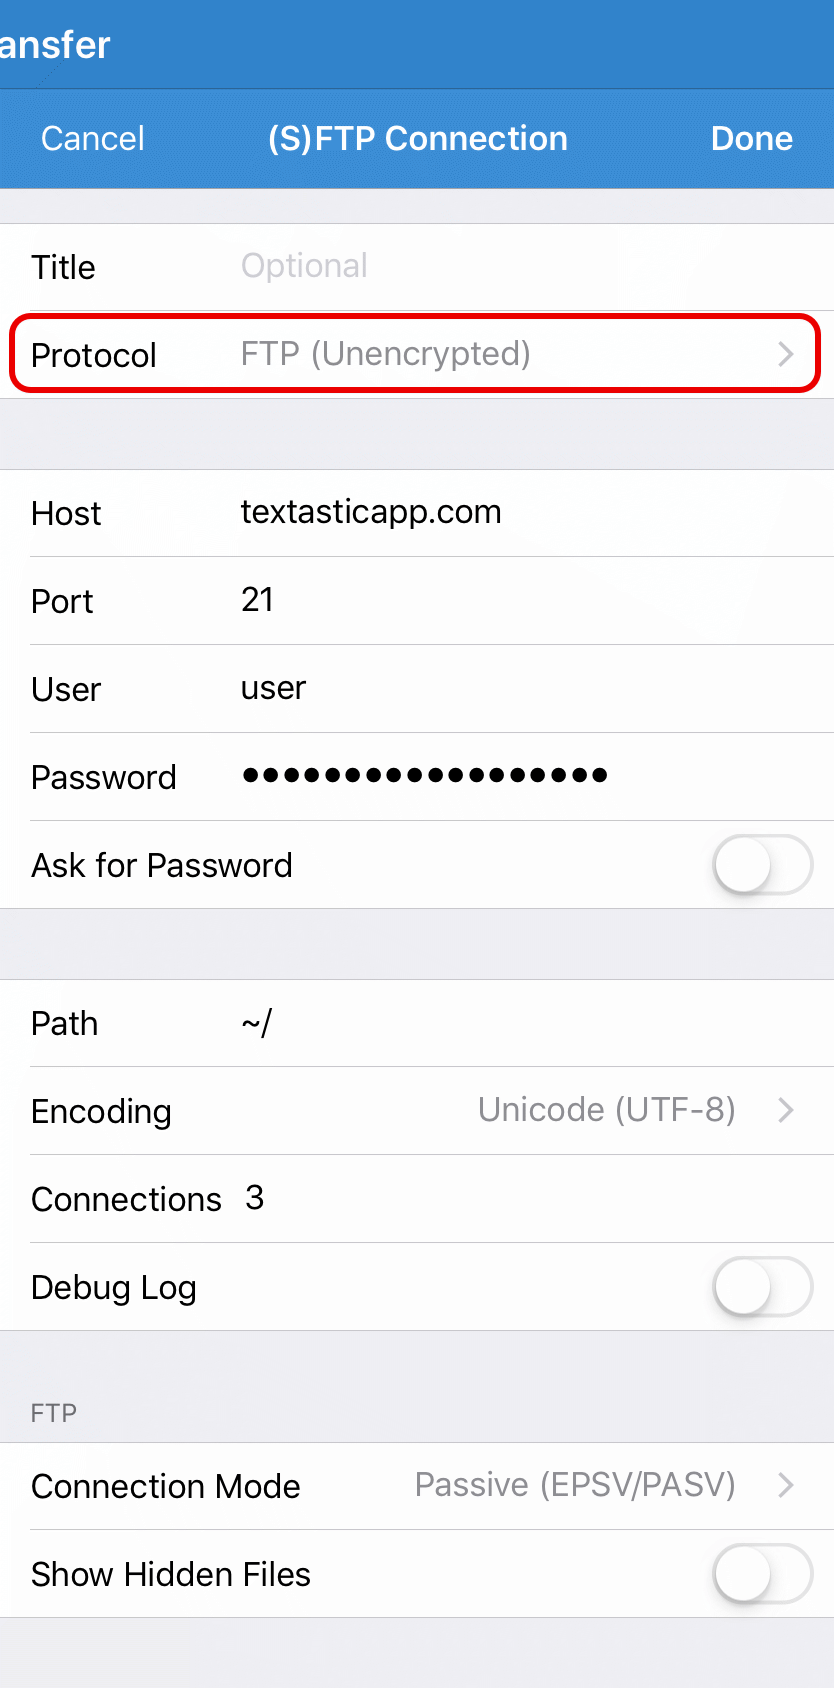 Configure an FTP connection